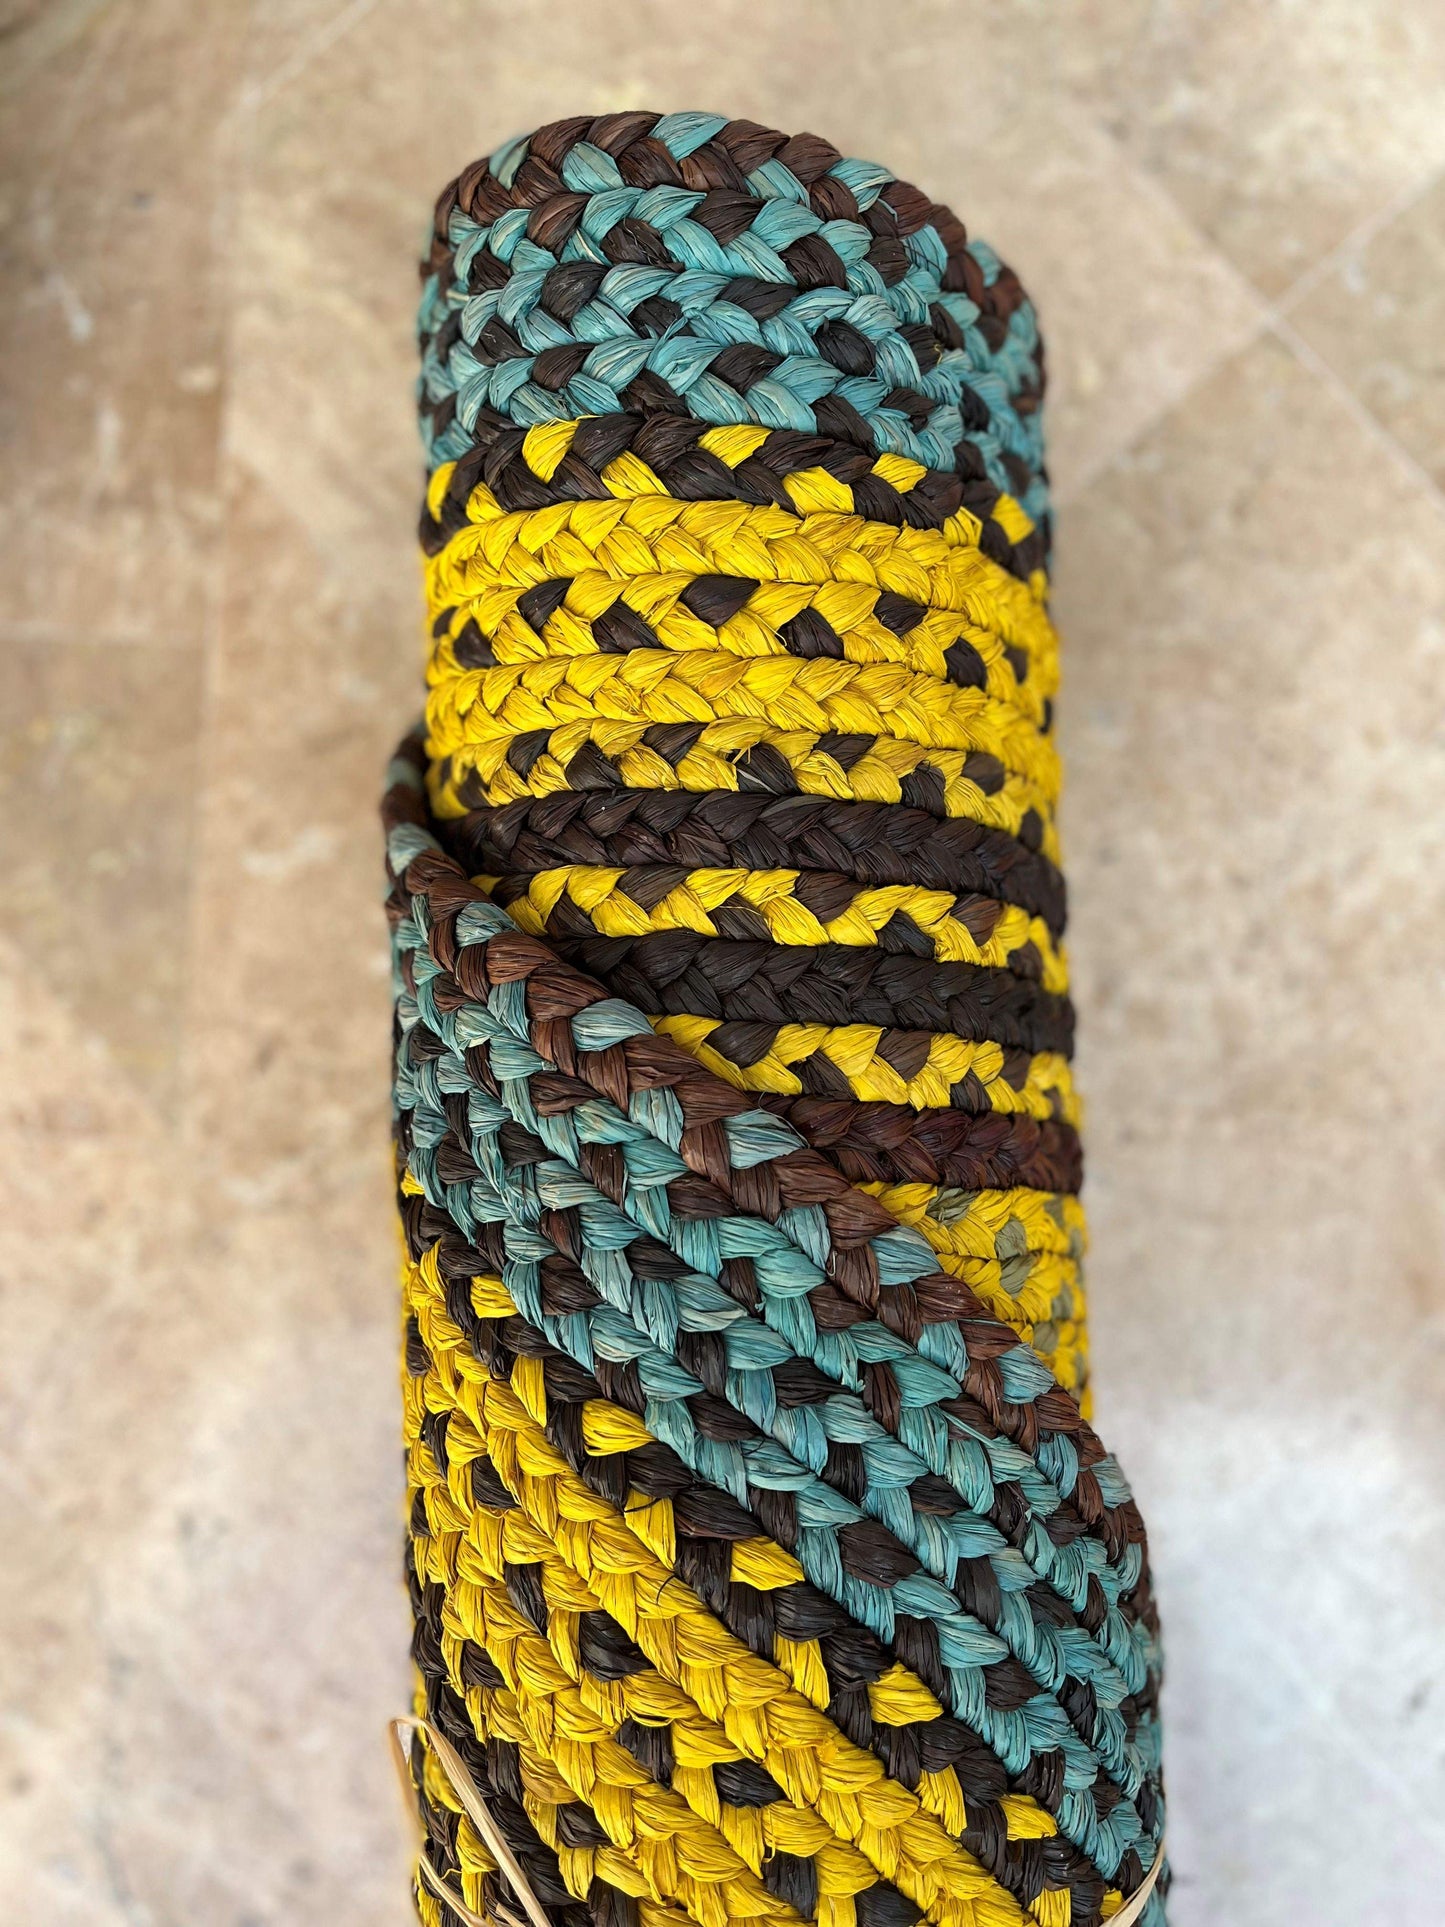 Tapis rond en raphia turquoise, jaune & rose - Séraphina - 200 cm Intimani Ethnique chic